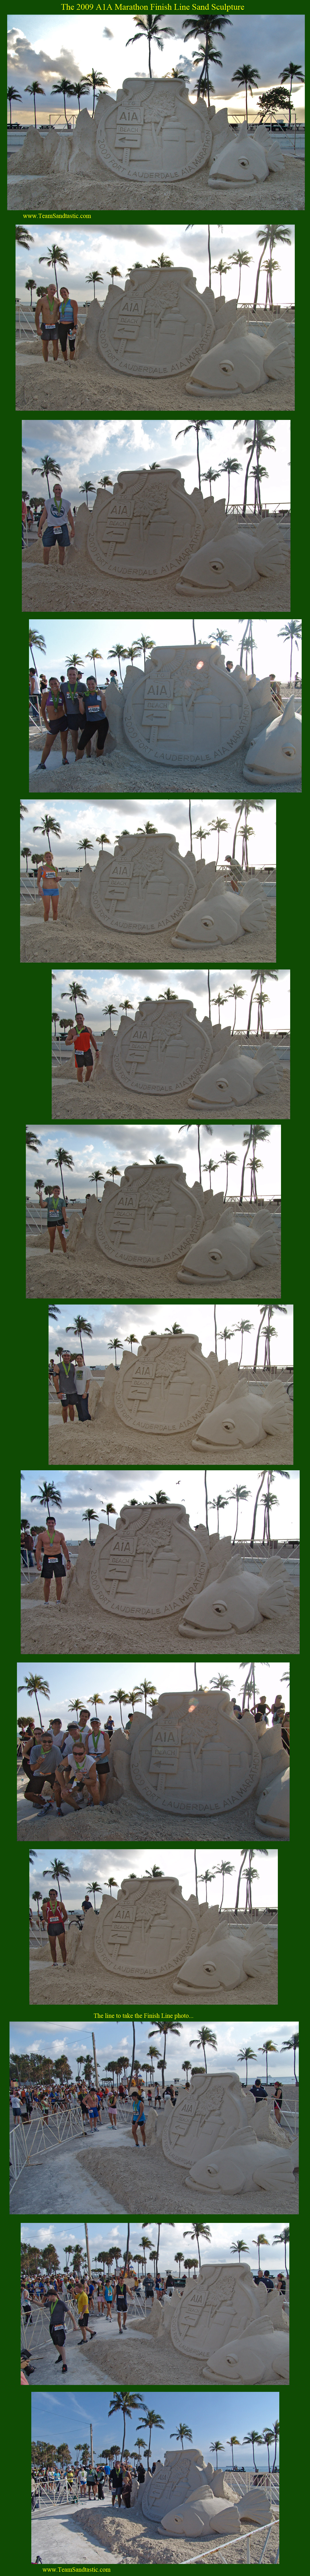 A1A Marathon Sand Sculpture